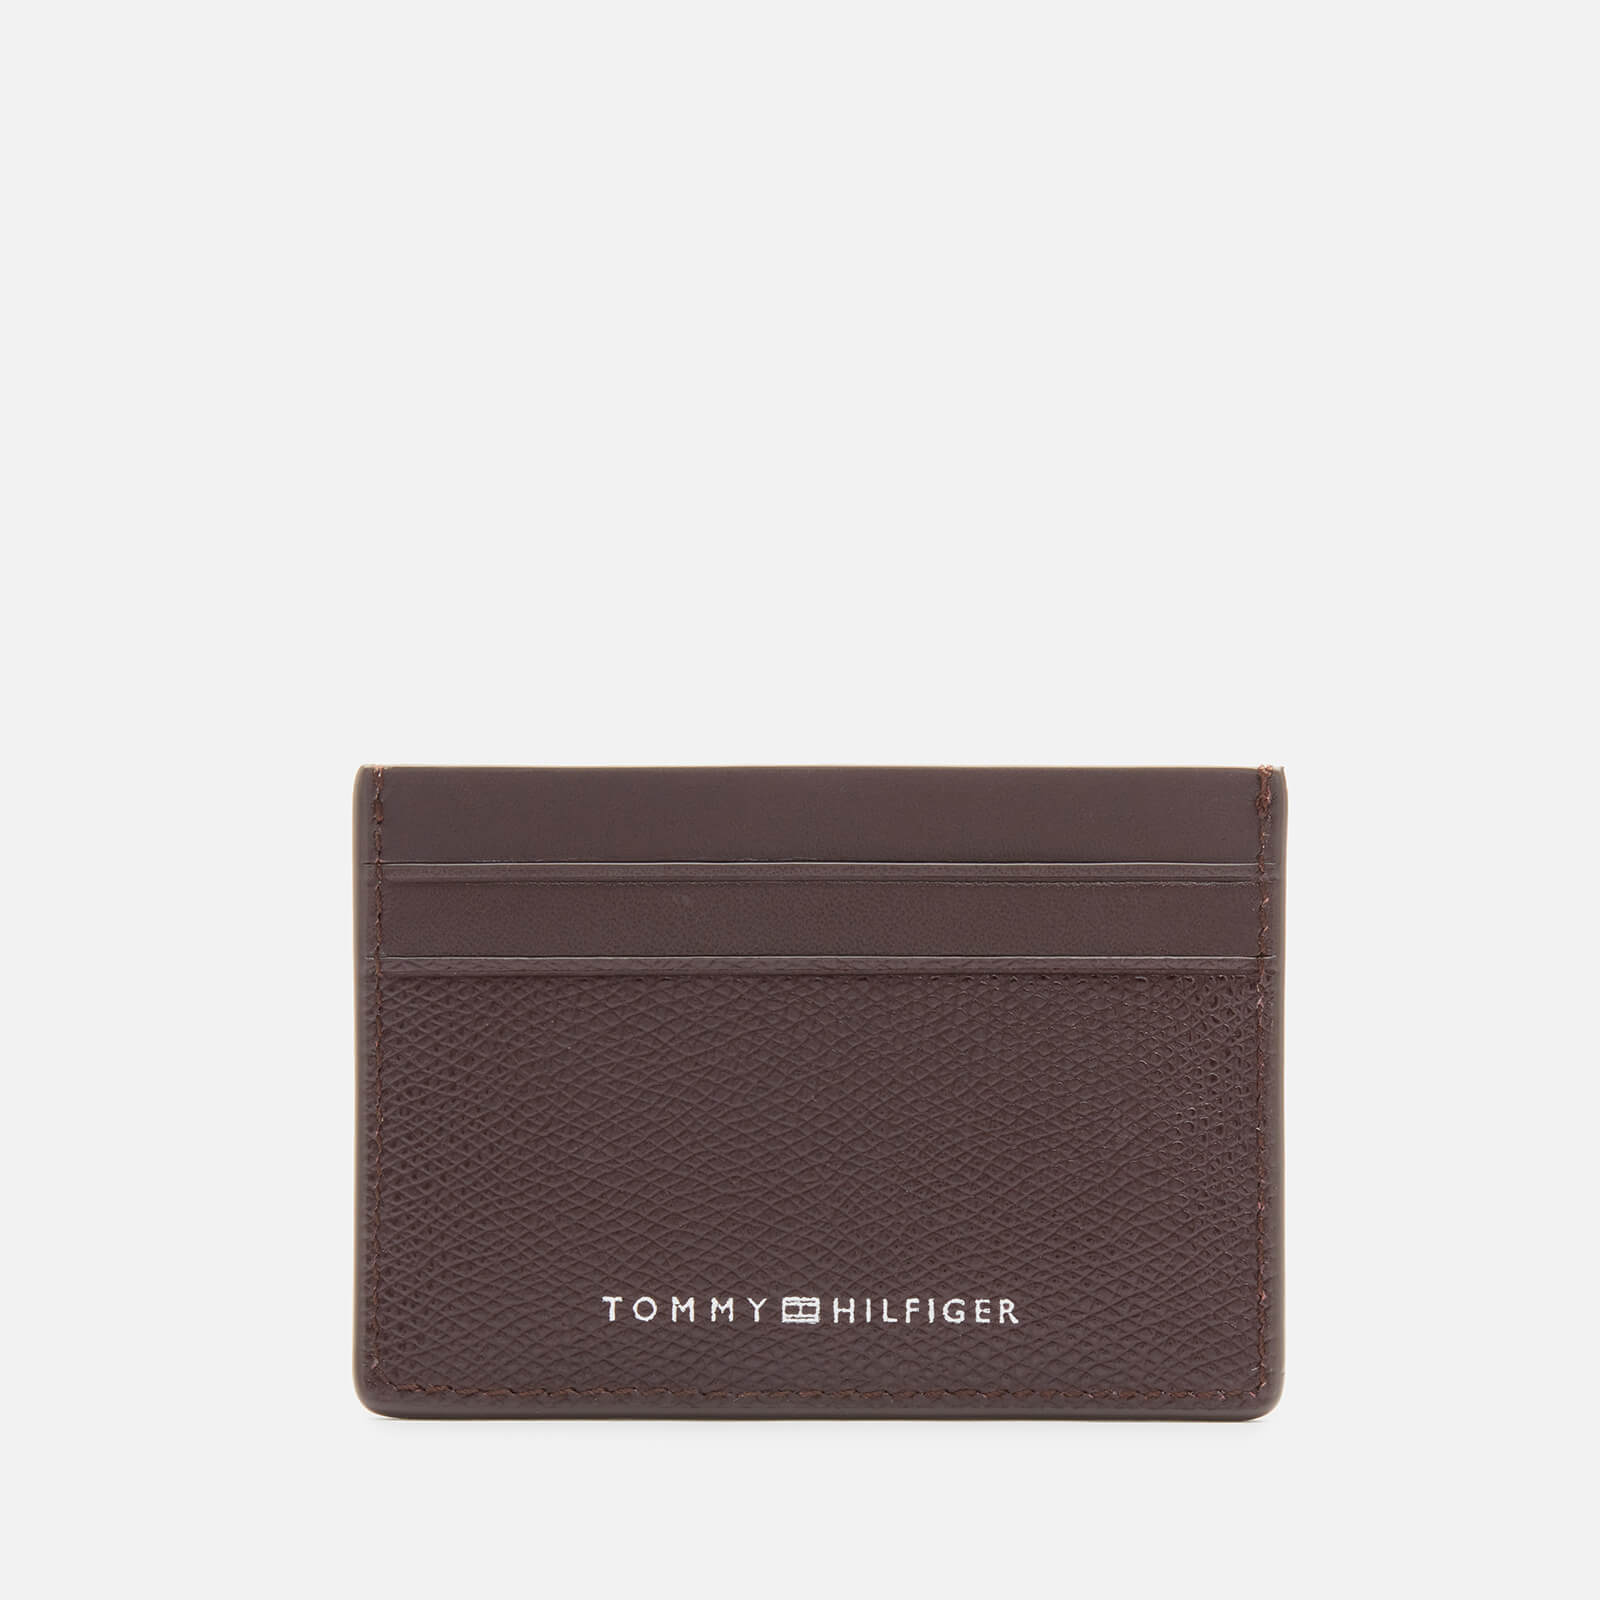 Tommy Hilfiger Men's Business Credit Card Holder - Twilight Plum